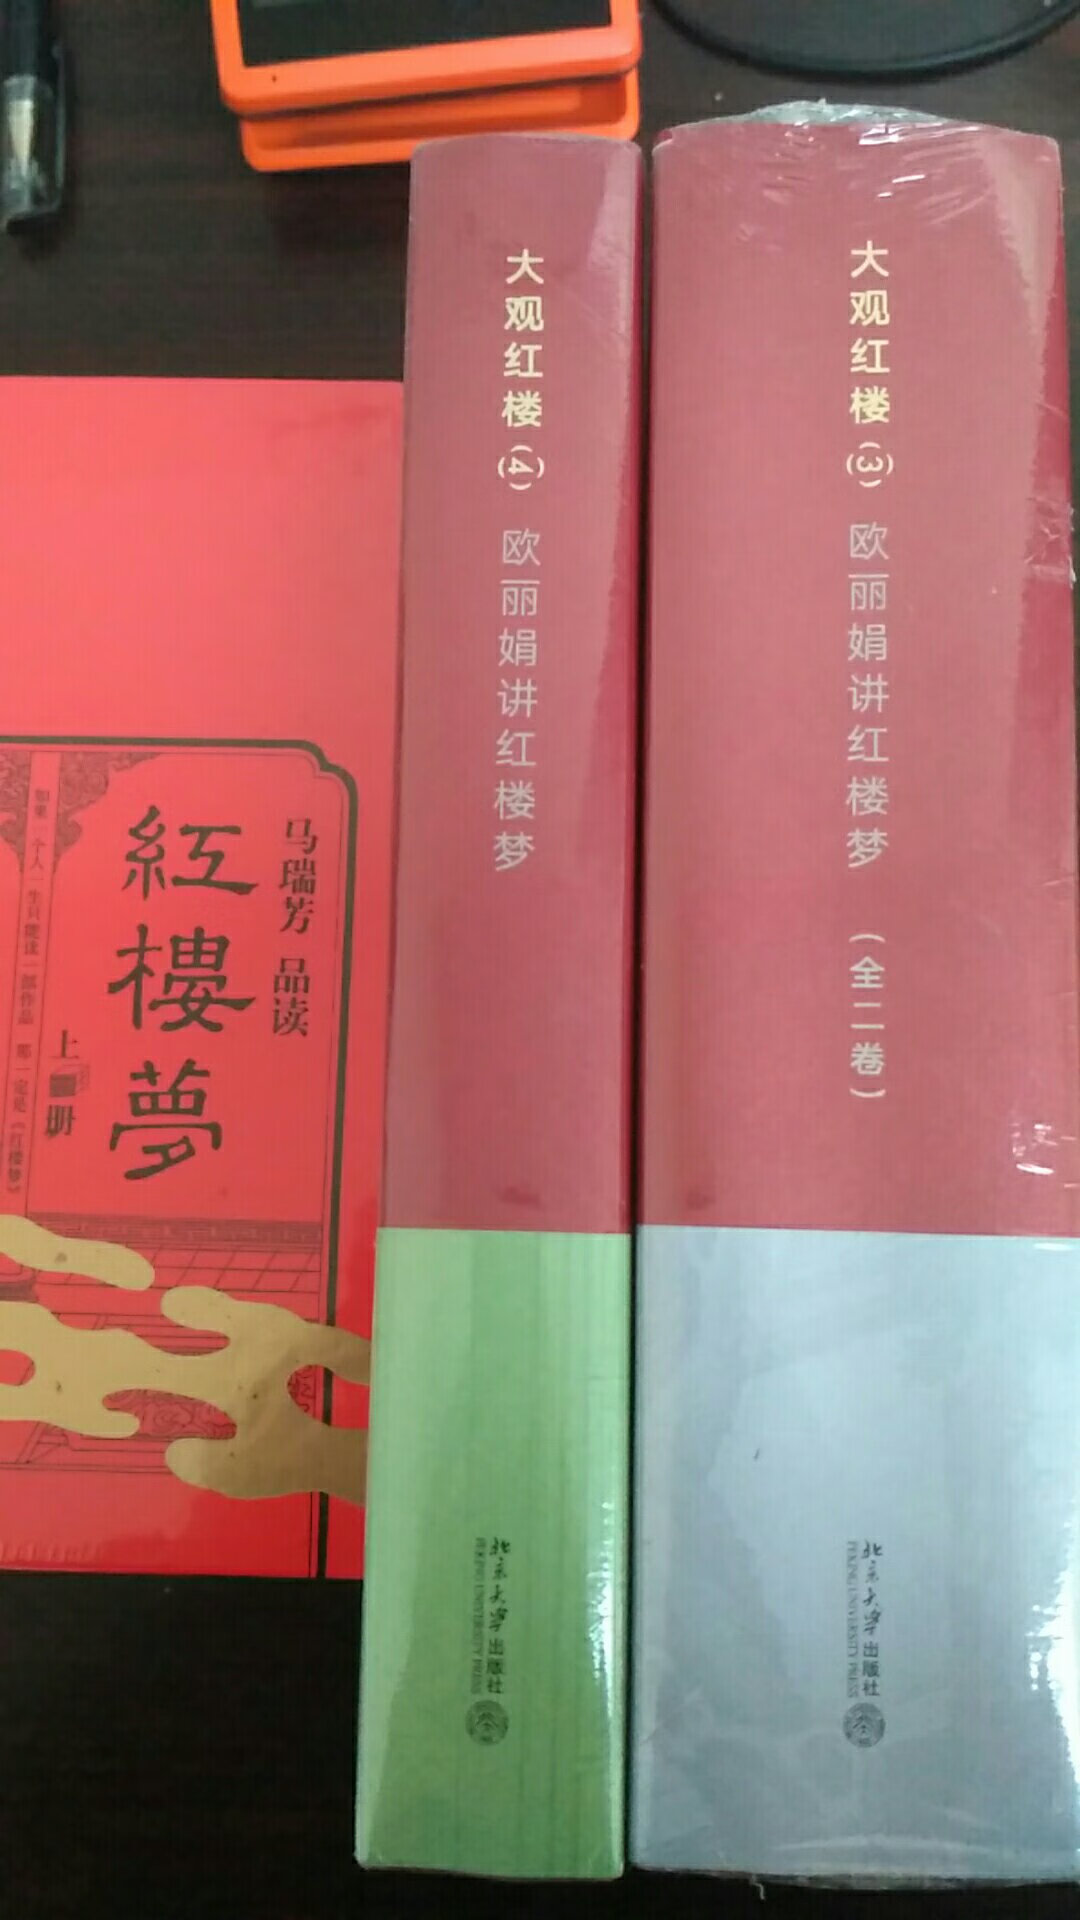 台湾教授讲课的红楼梦，不一样的风格，不久前买过，第一卷，第二卷，不过还没看完，第三，四卷现在出版了，趁着活动购入。第三卷又分为二册，所以整套本是五本的，喜欢红楼梦的朋友不要错过。